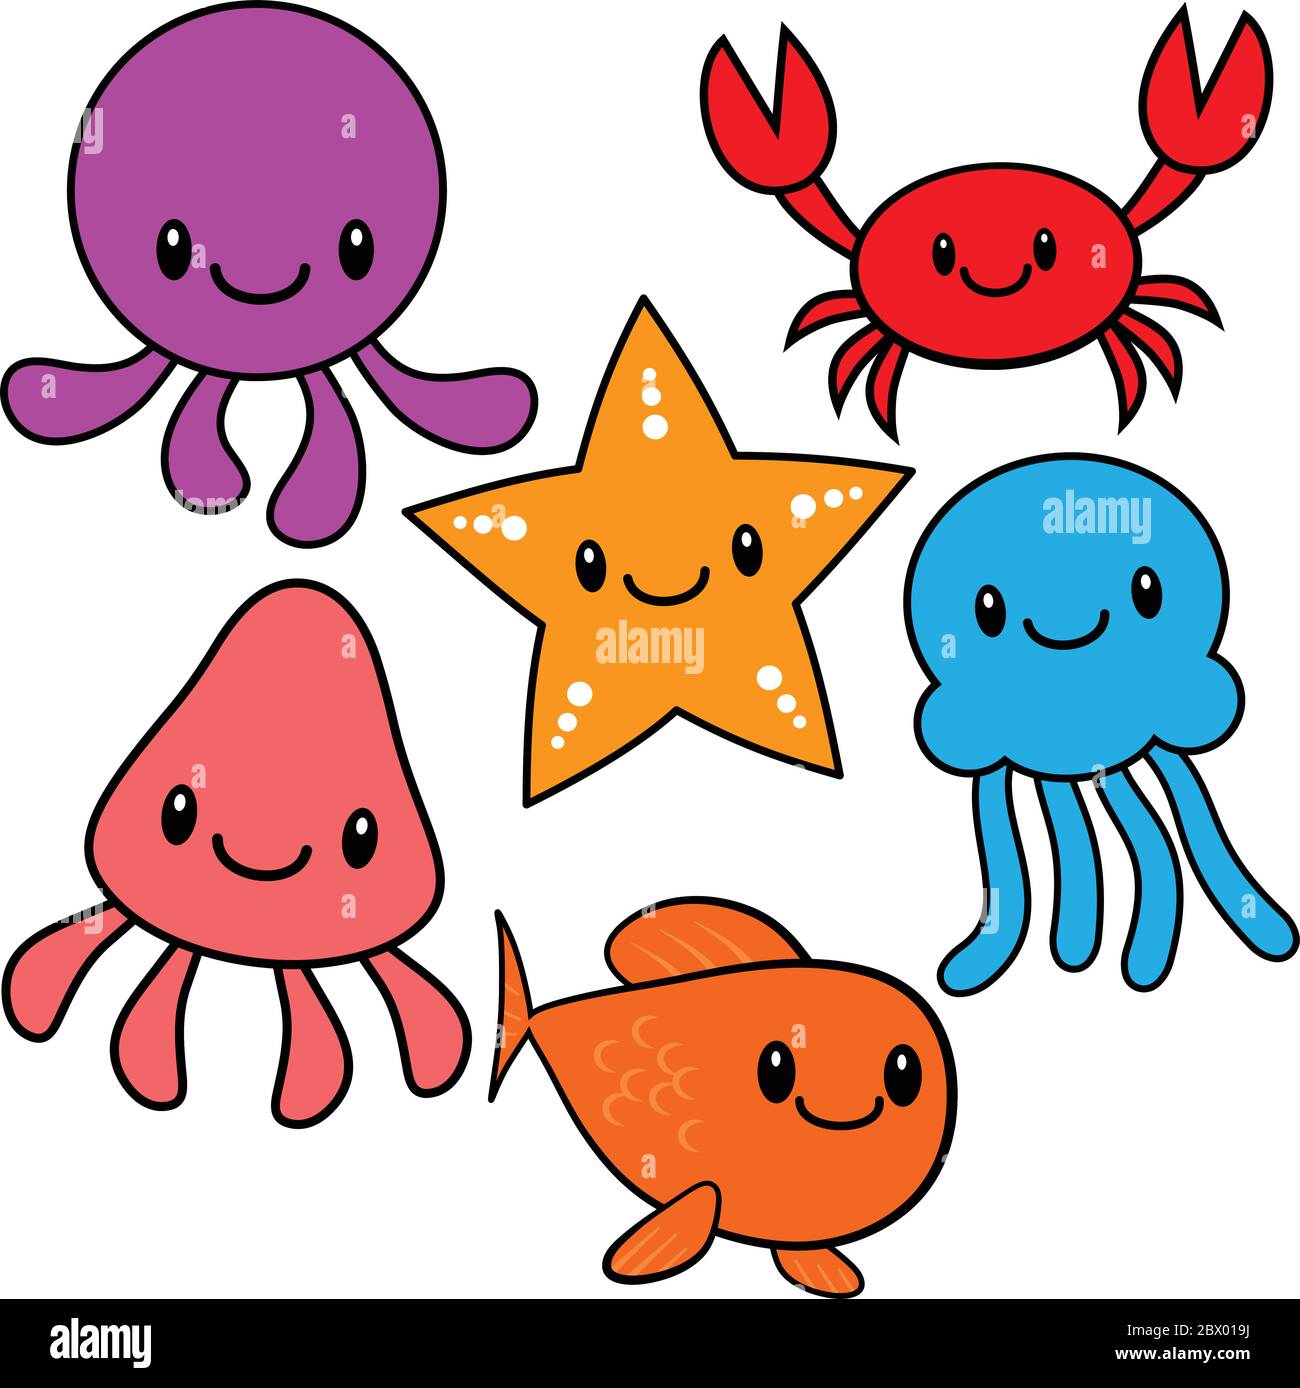 Kawaii Sea Critters- A Cartoon Illustration of Kawaii Sea Critters. Stock Vector